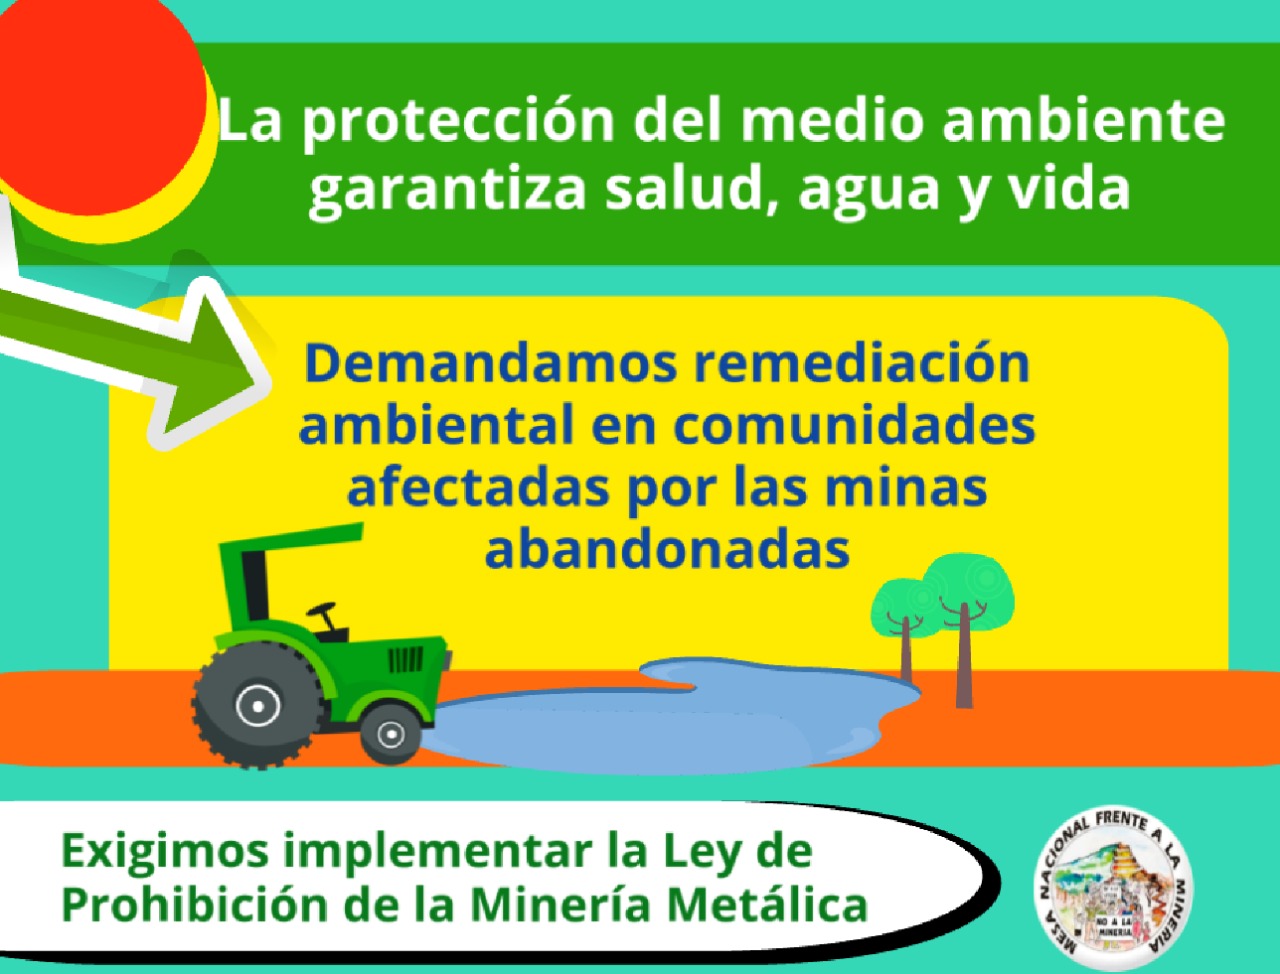 CAMPAÑA: ¡Exigimos implementar Ley de Prohibición de la Minería Metálica y Elevar a rango constitucional la Prohibición!